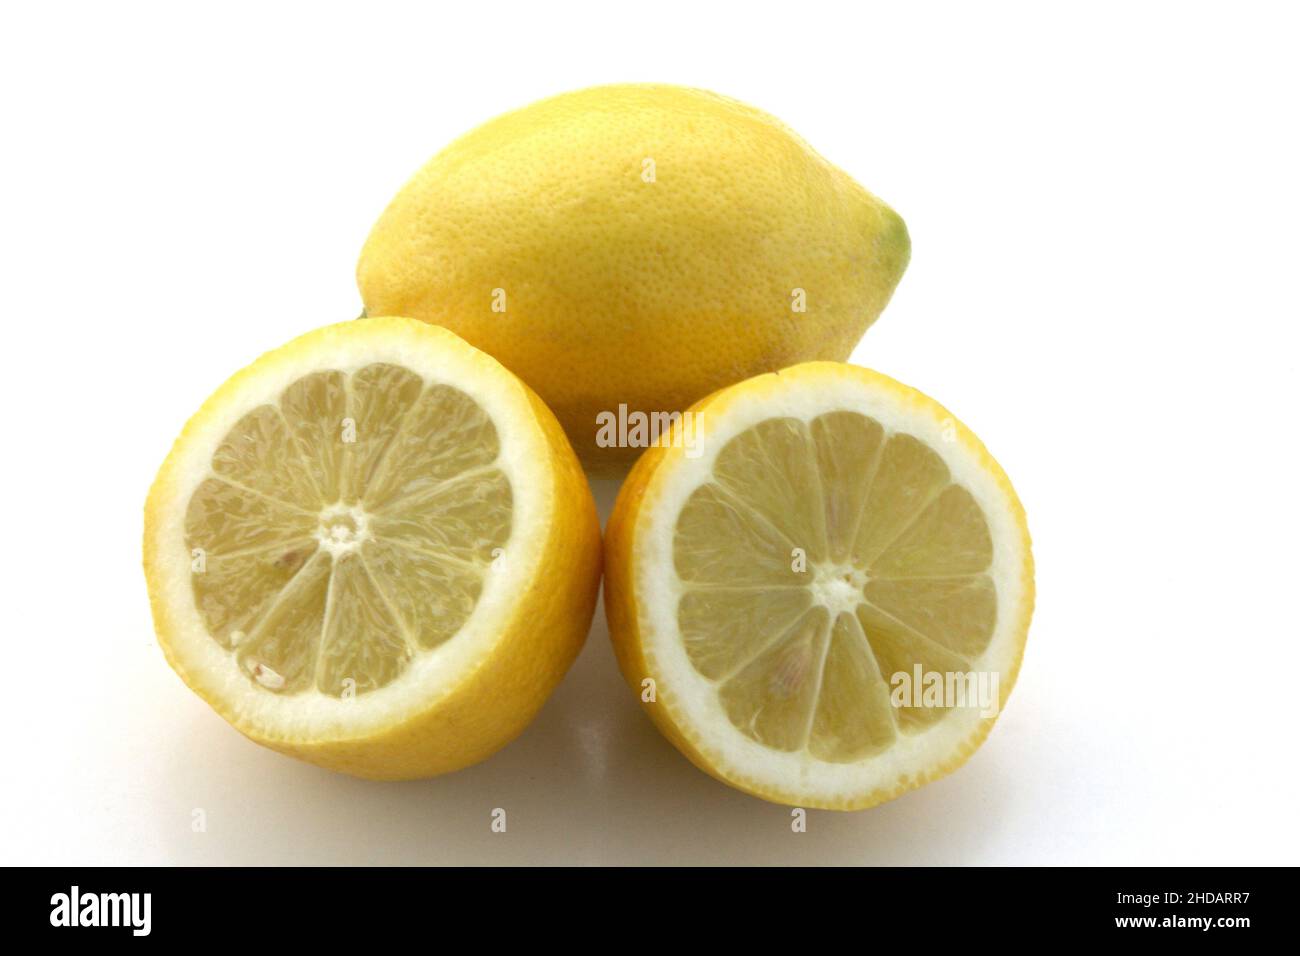 Eine ganze und eine aufgeschnittene Zitrone, Frucht, Früchte, Stock Photo